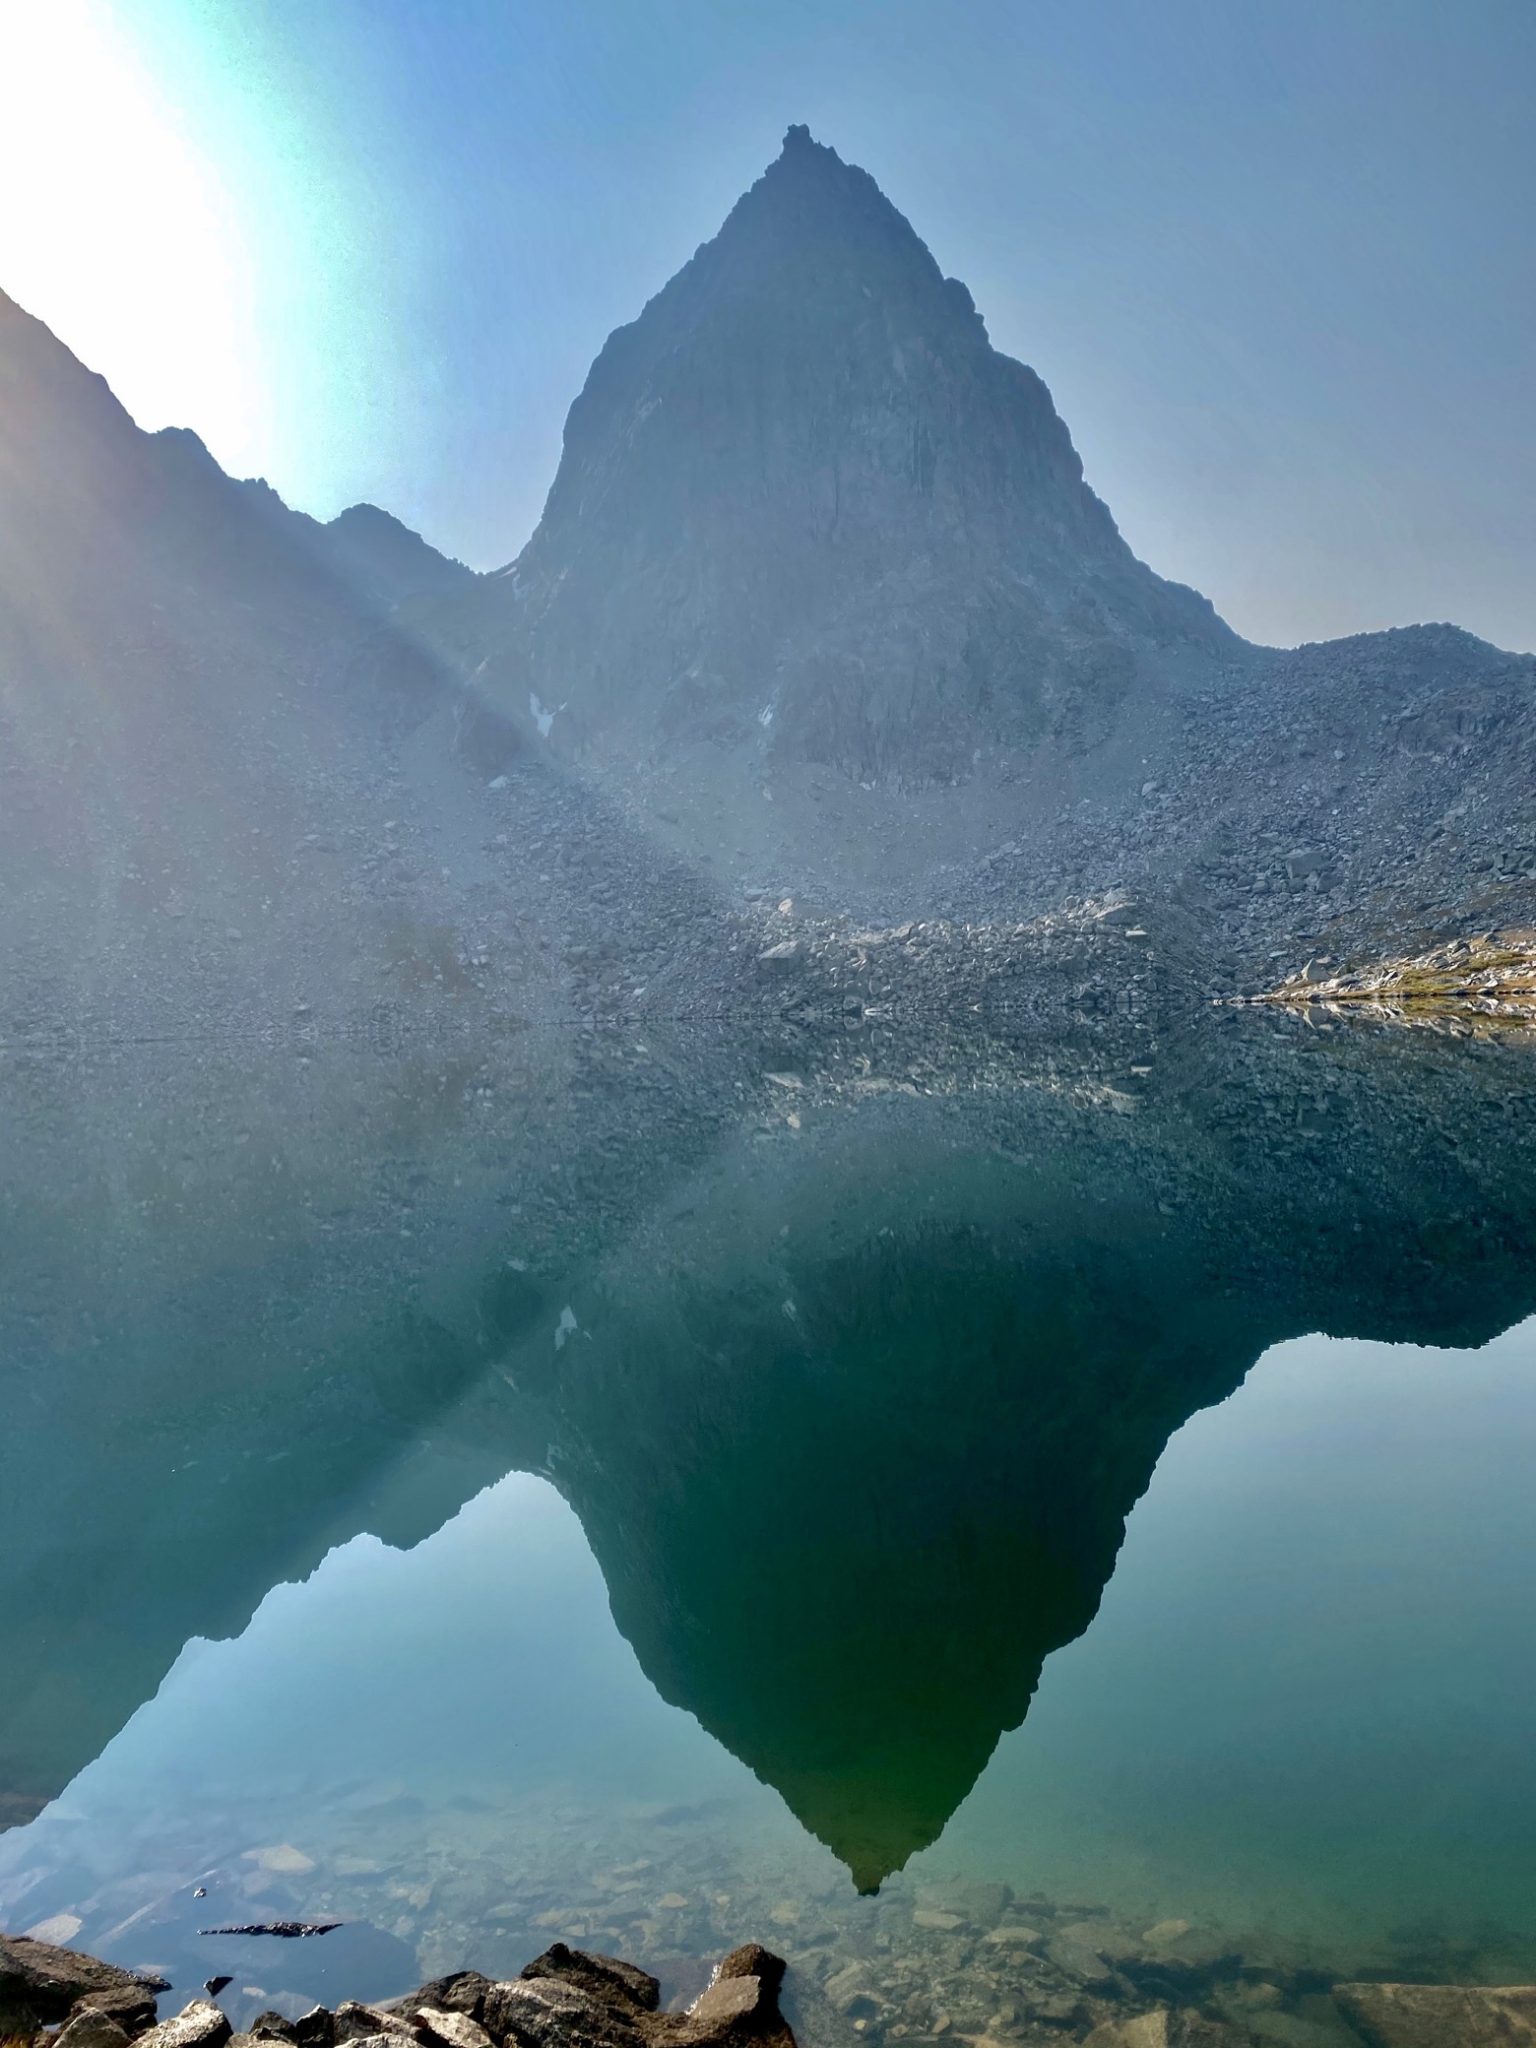 Stroud Peak perfectly reflected in Peak Lake